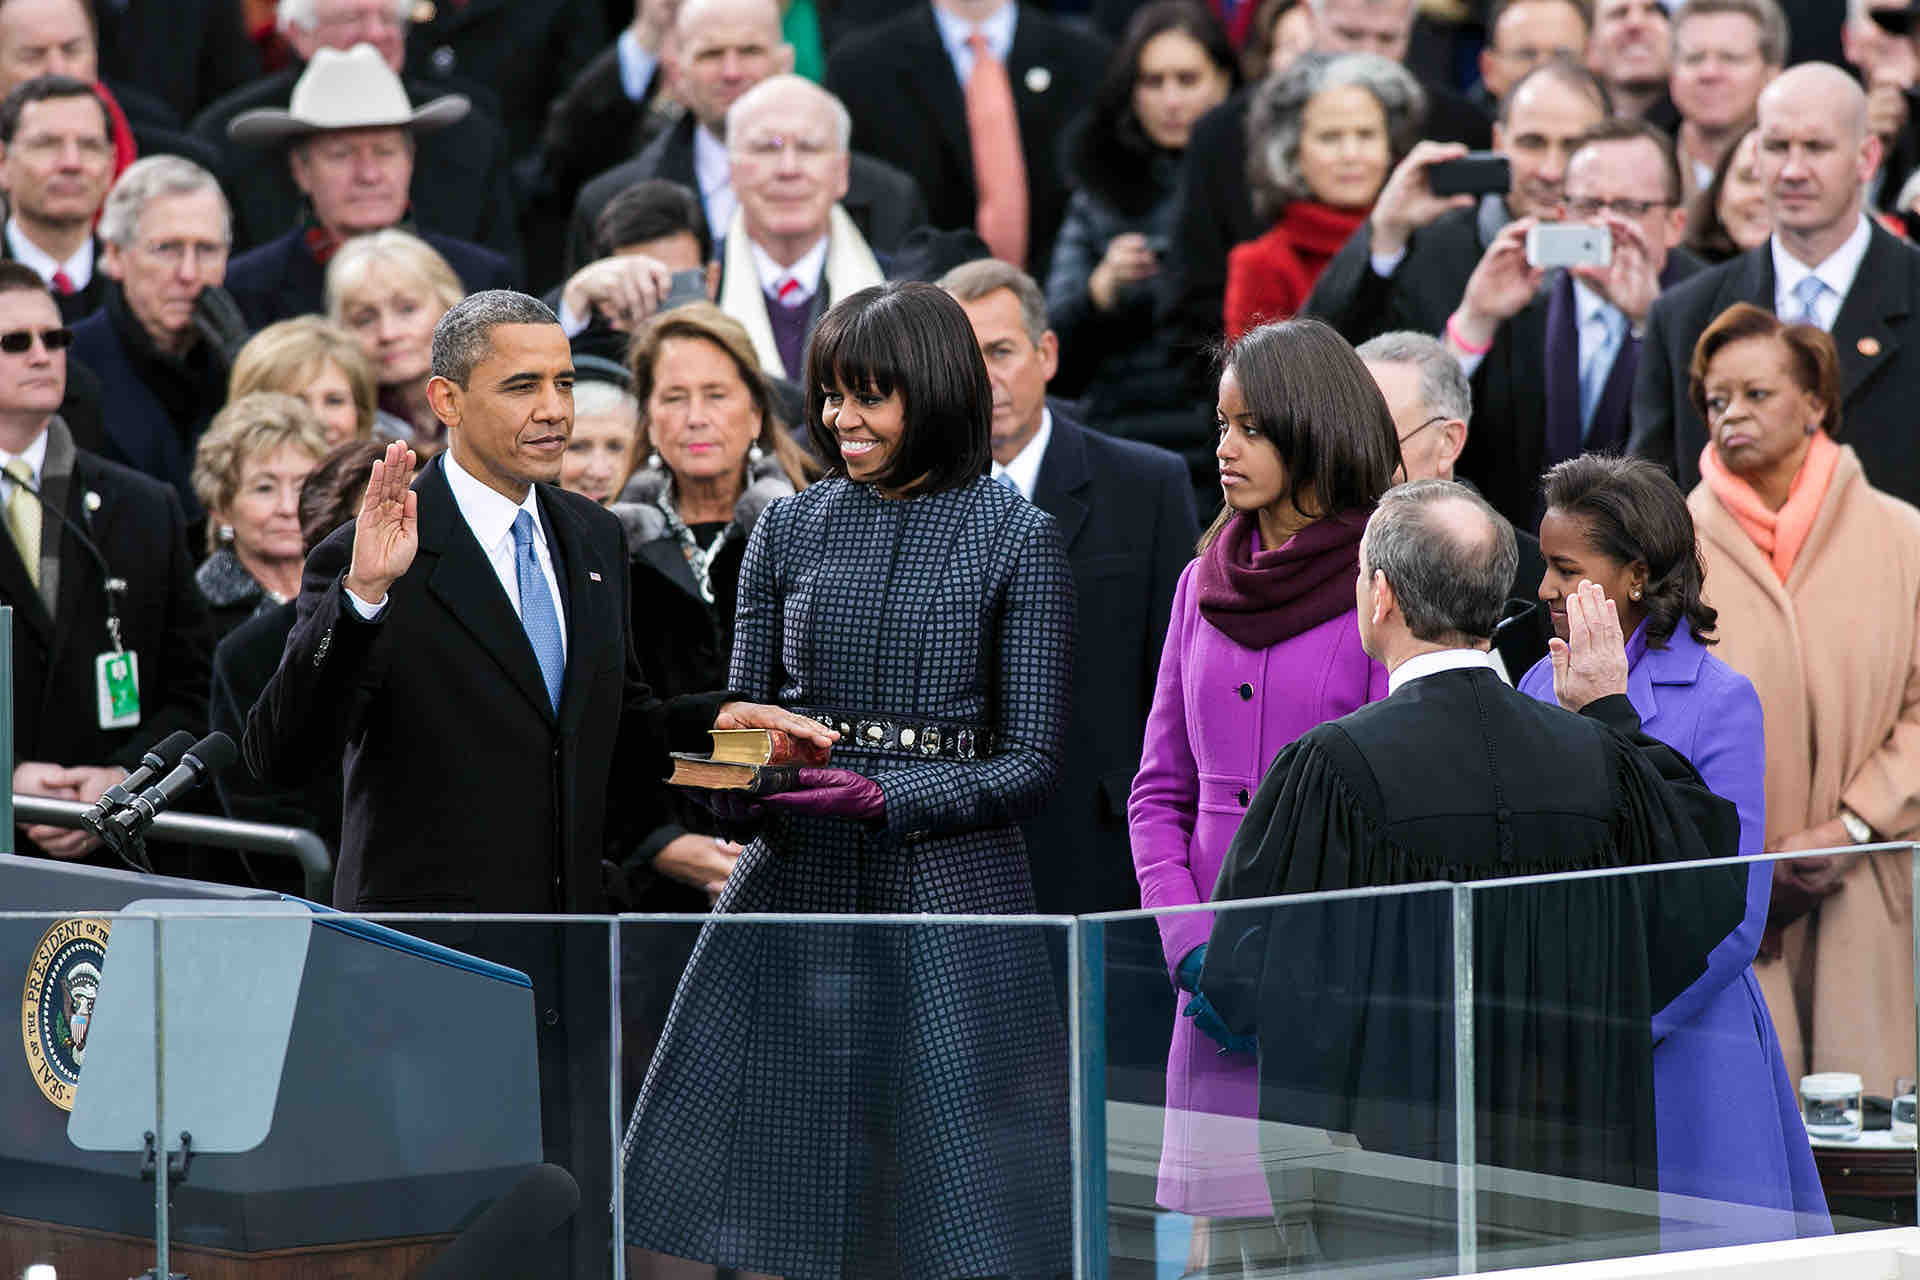 2013 Inauguration of Barack Obama